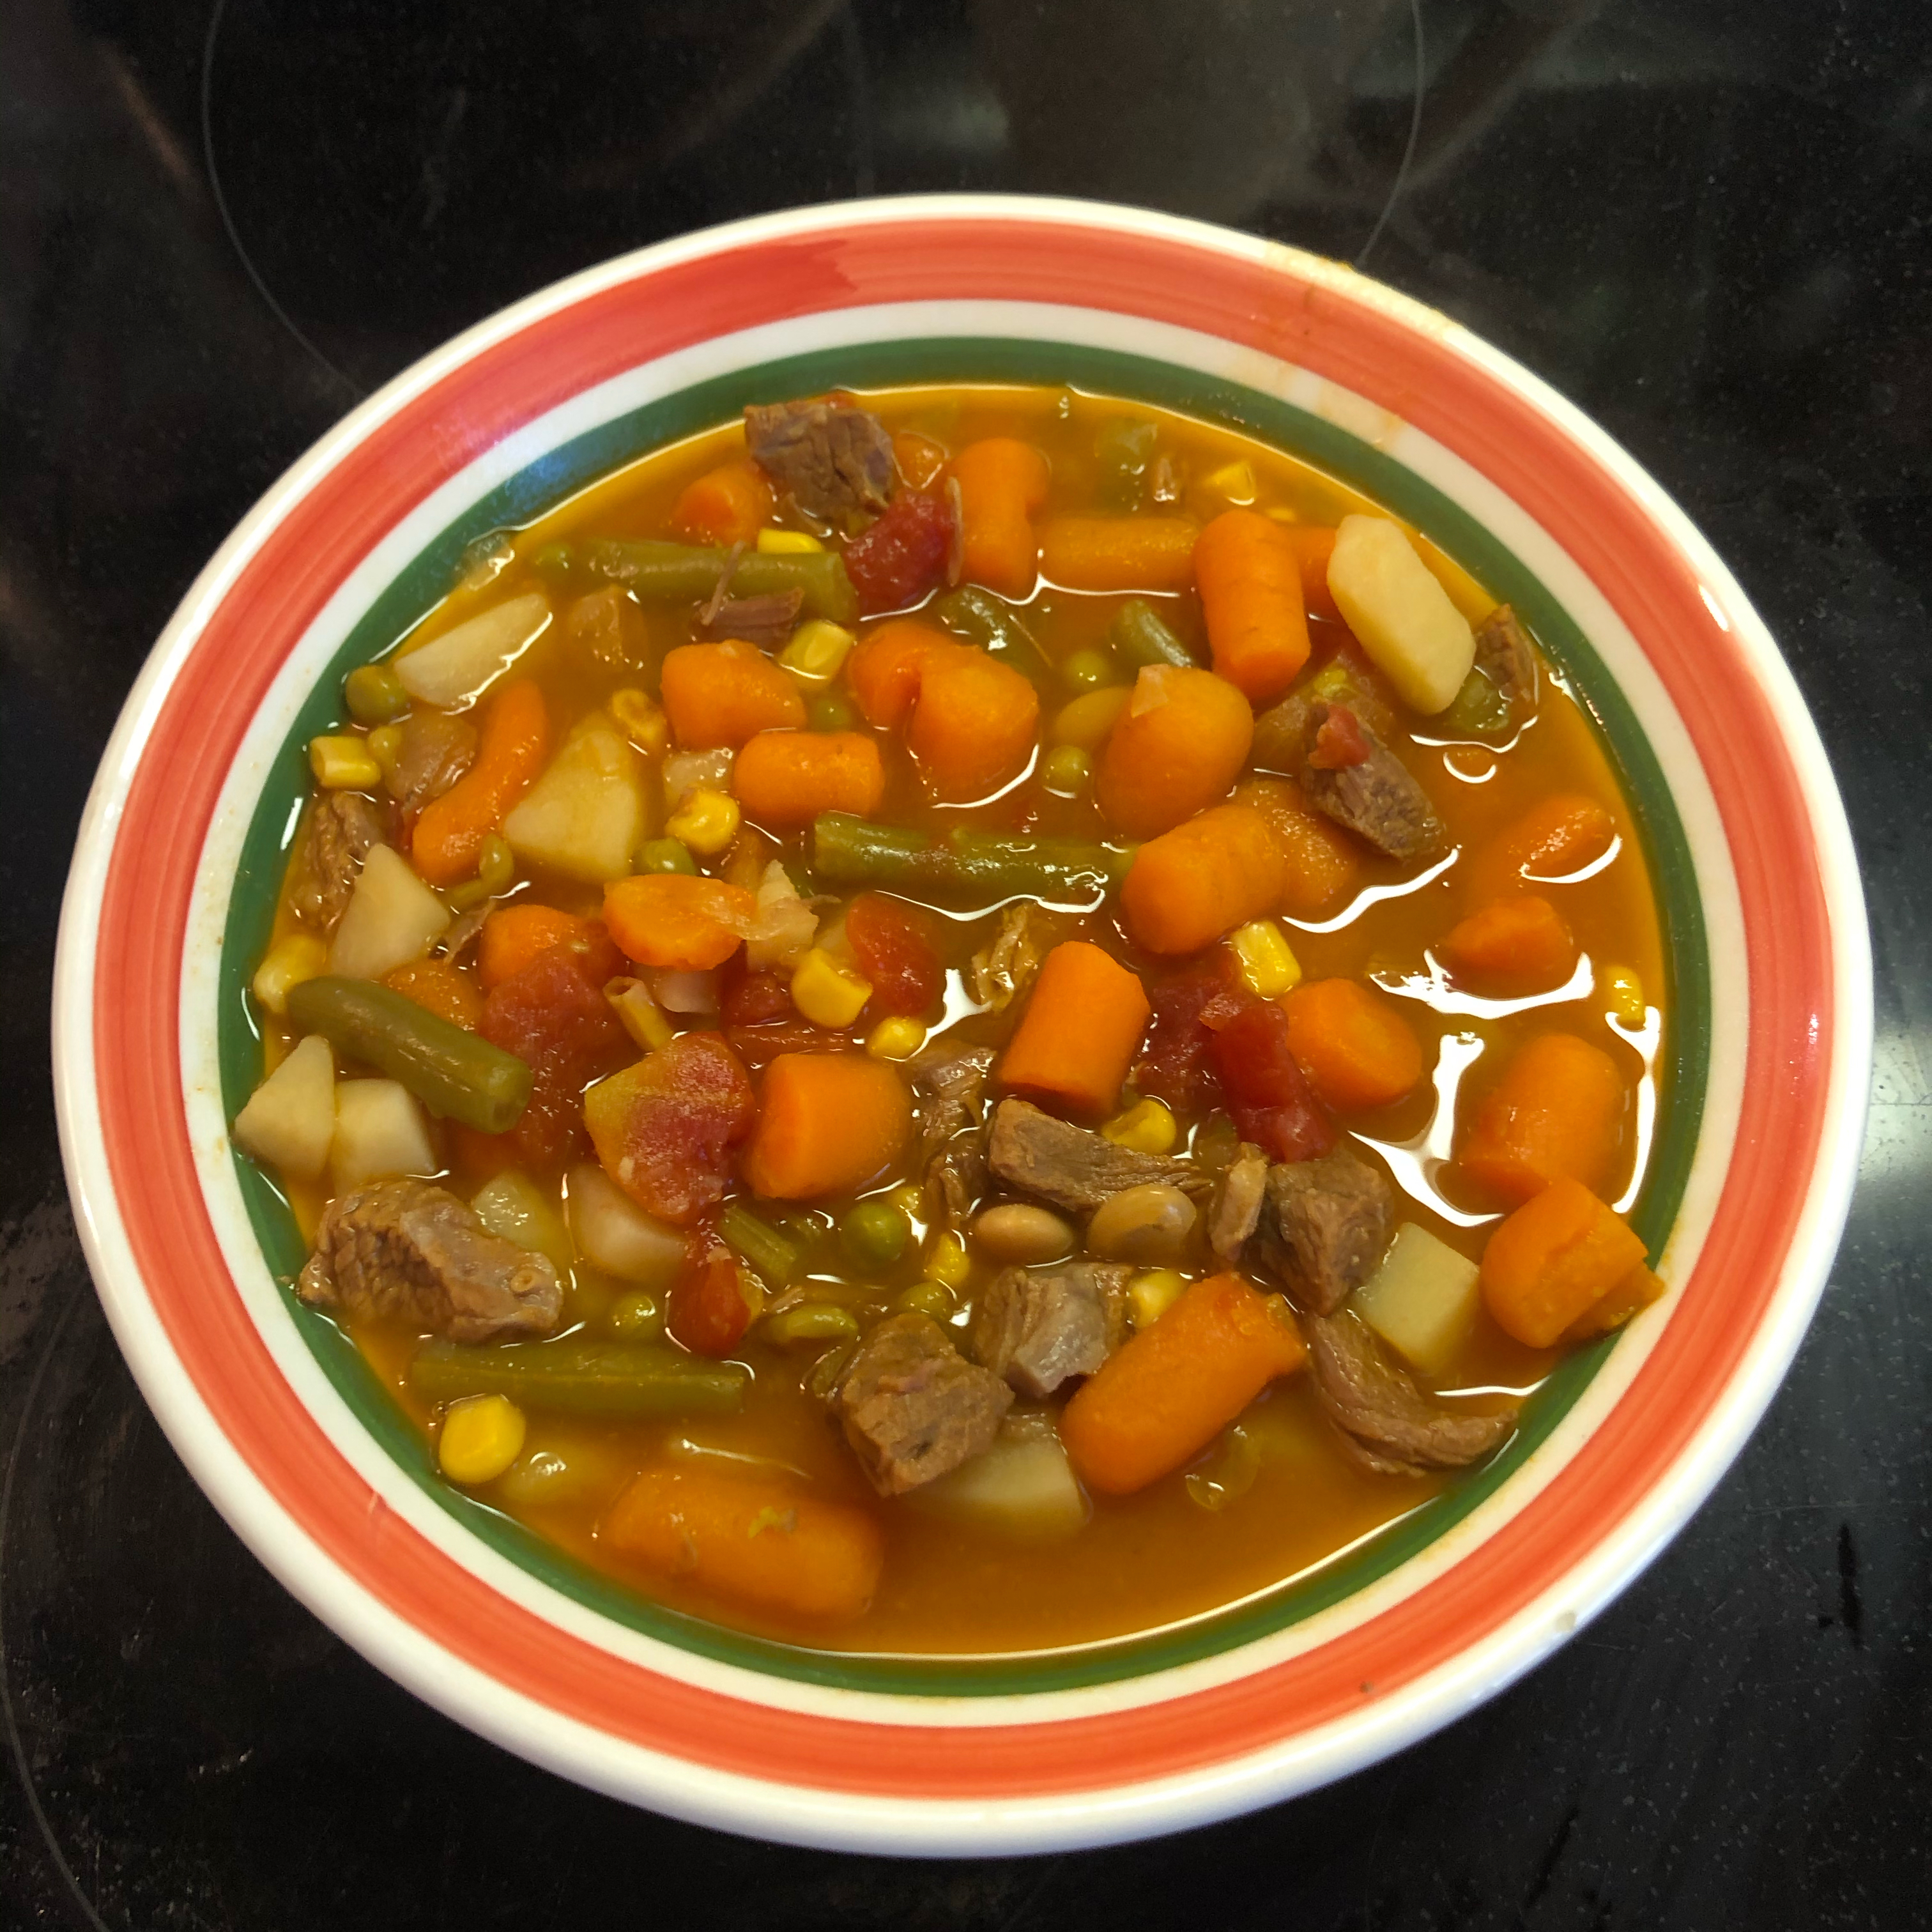 Easy Vegetable Soup II